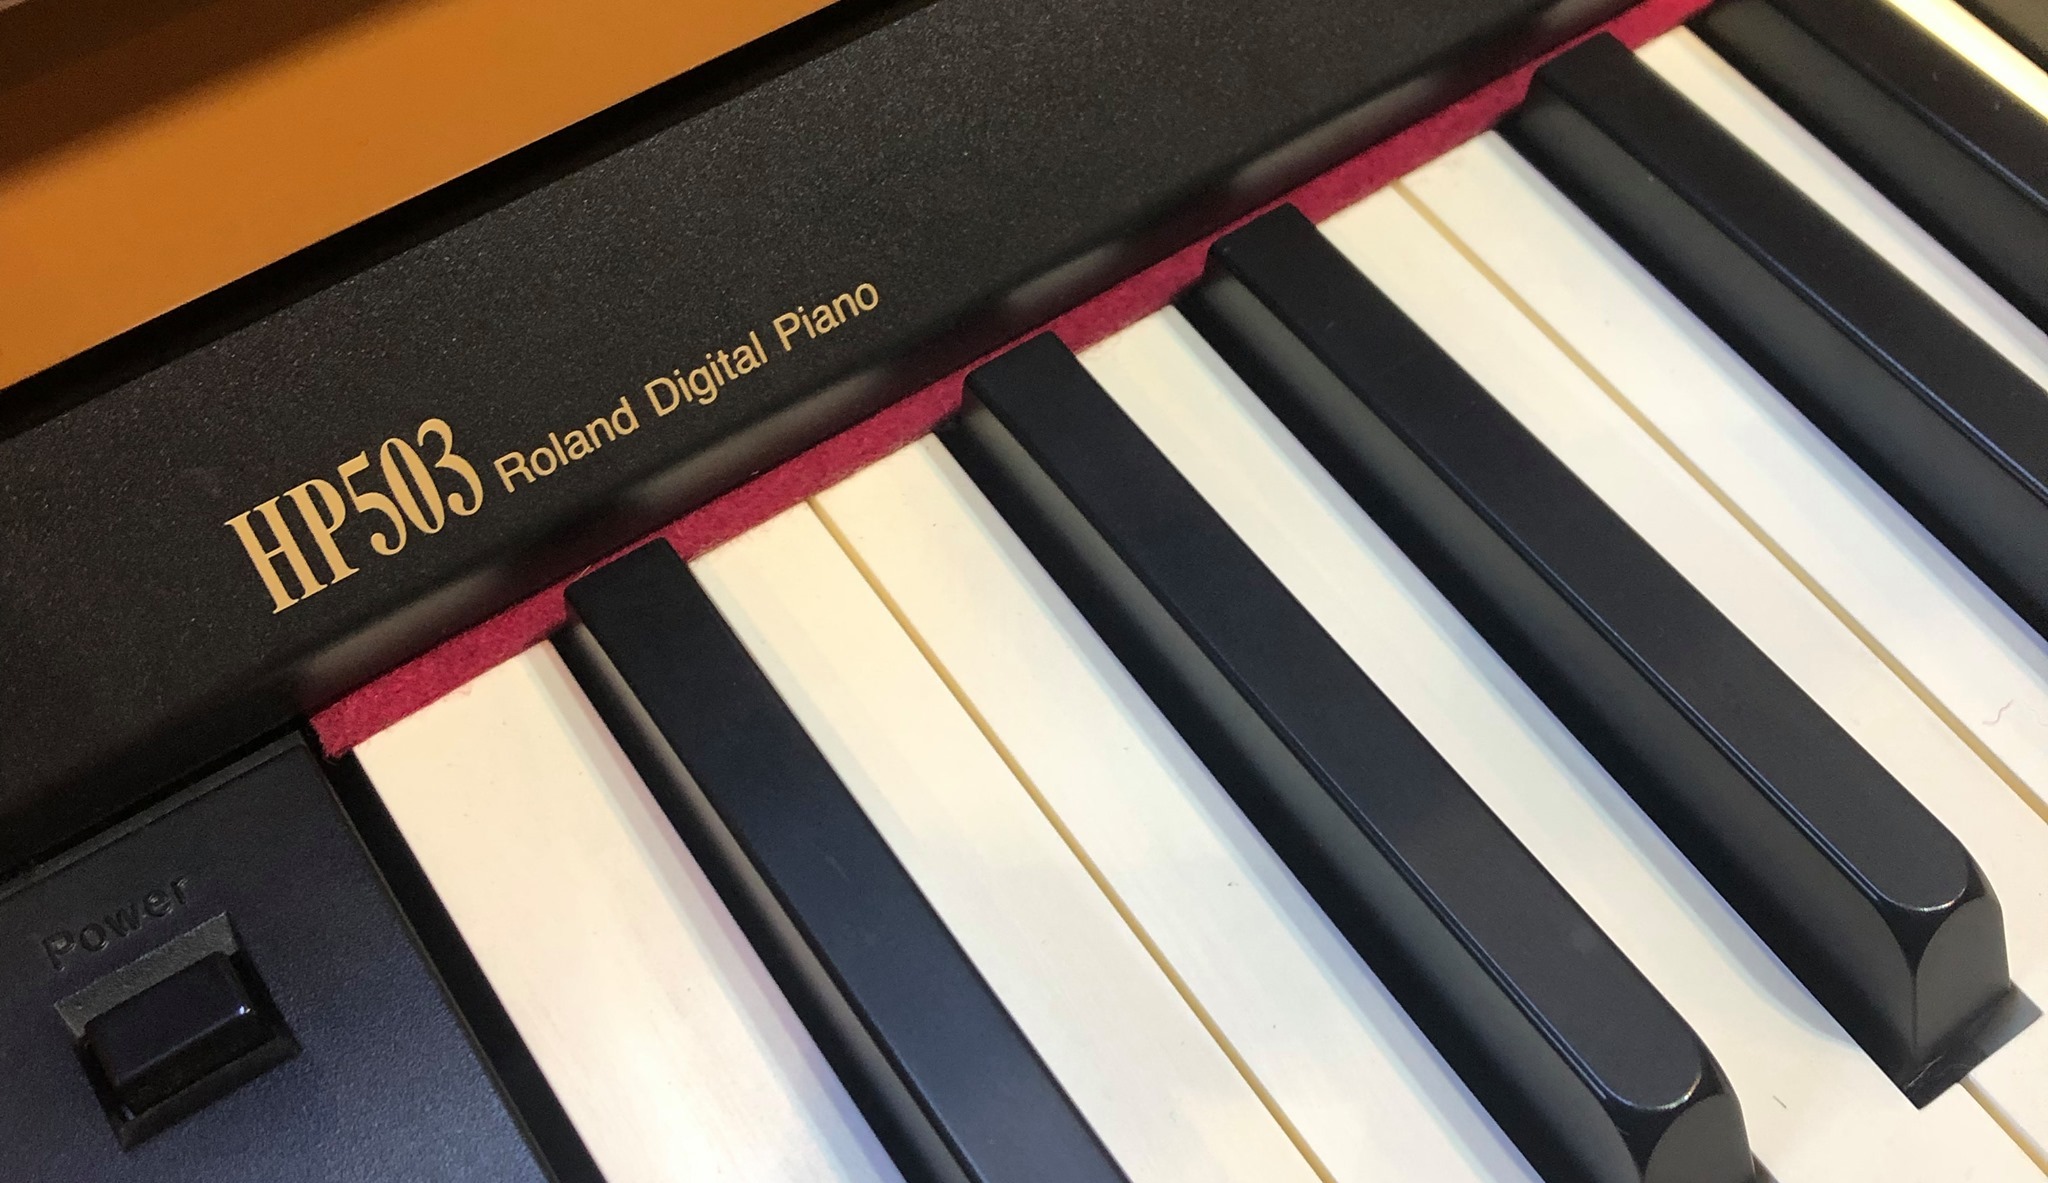 review piano điện roland hp-503-2